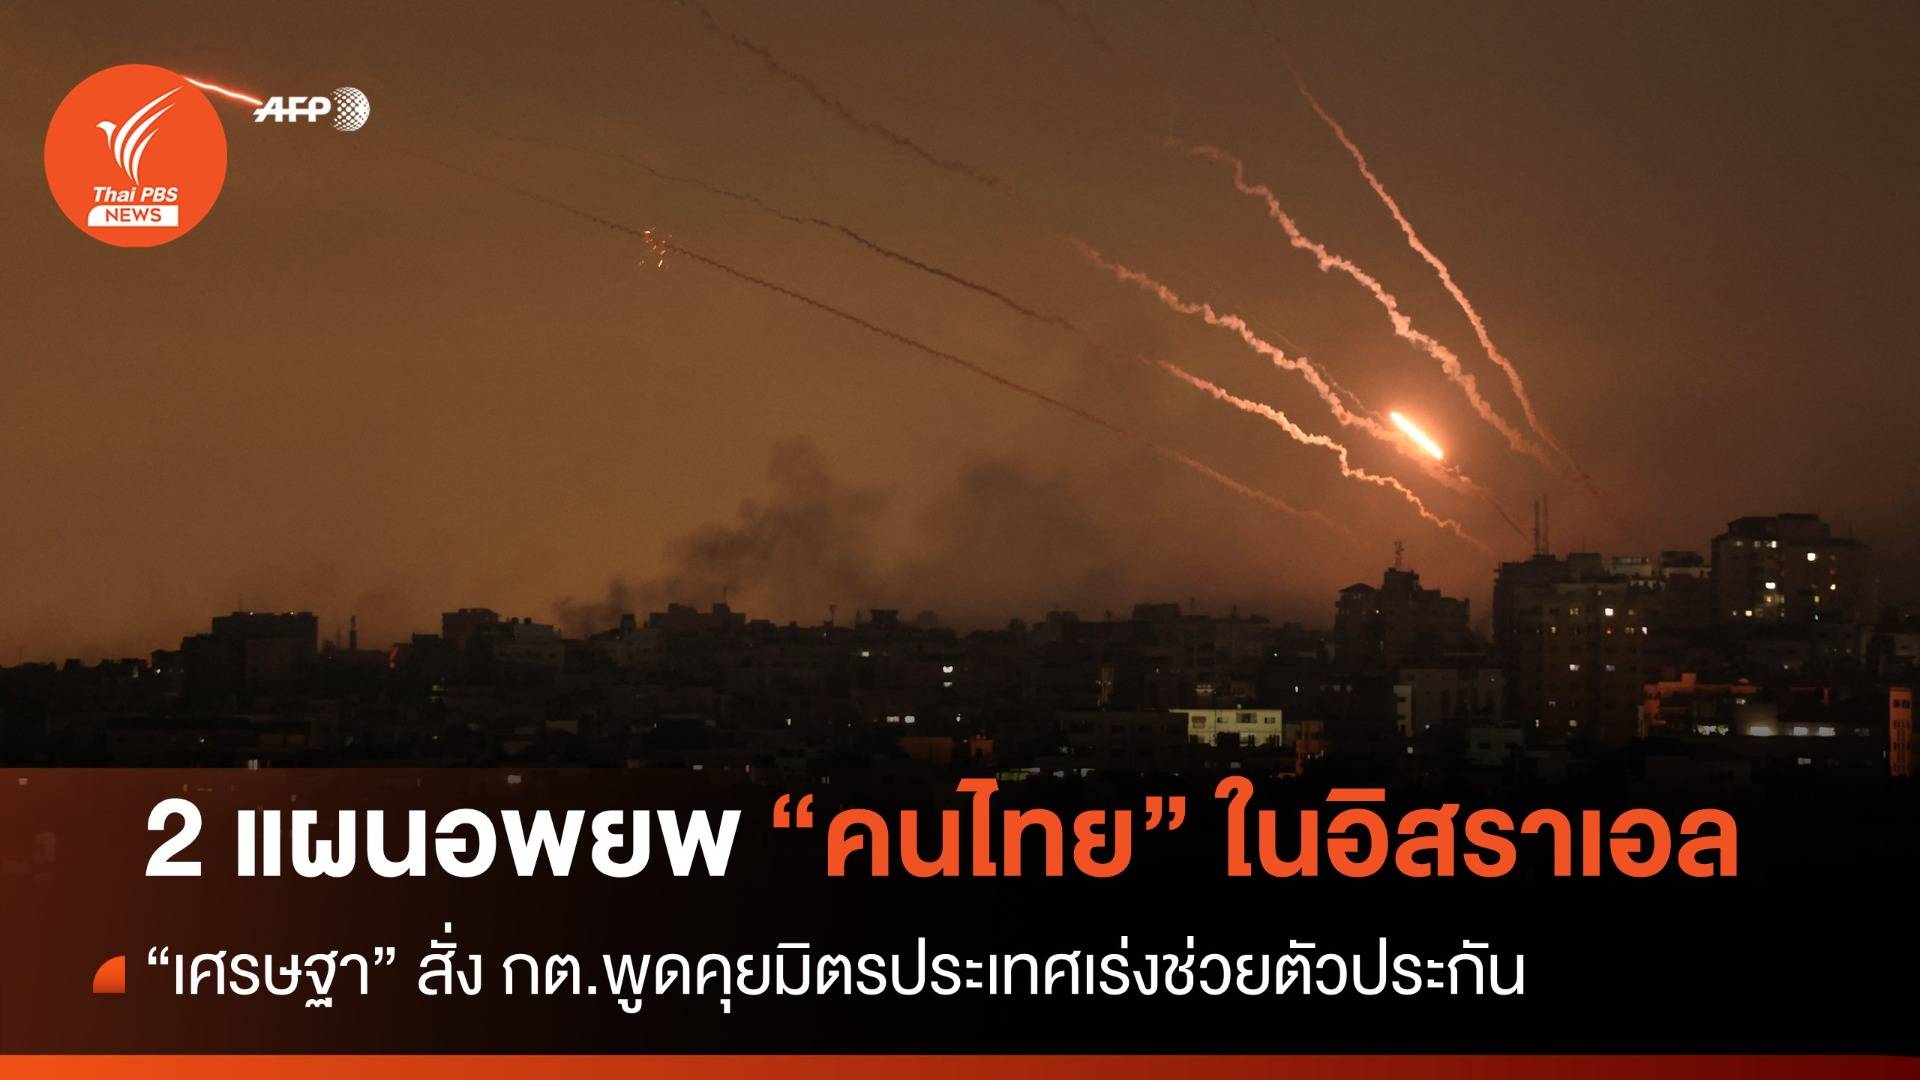 "เศรษฐา" เปิด 2 แผนอพยพ "แรงงานไทย" สั่ง กต.คุยมิตรประเทศเร่งช่วยตัวประกัน